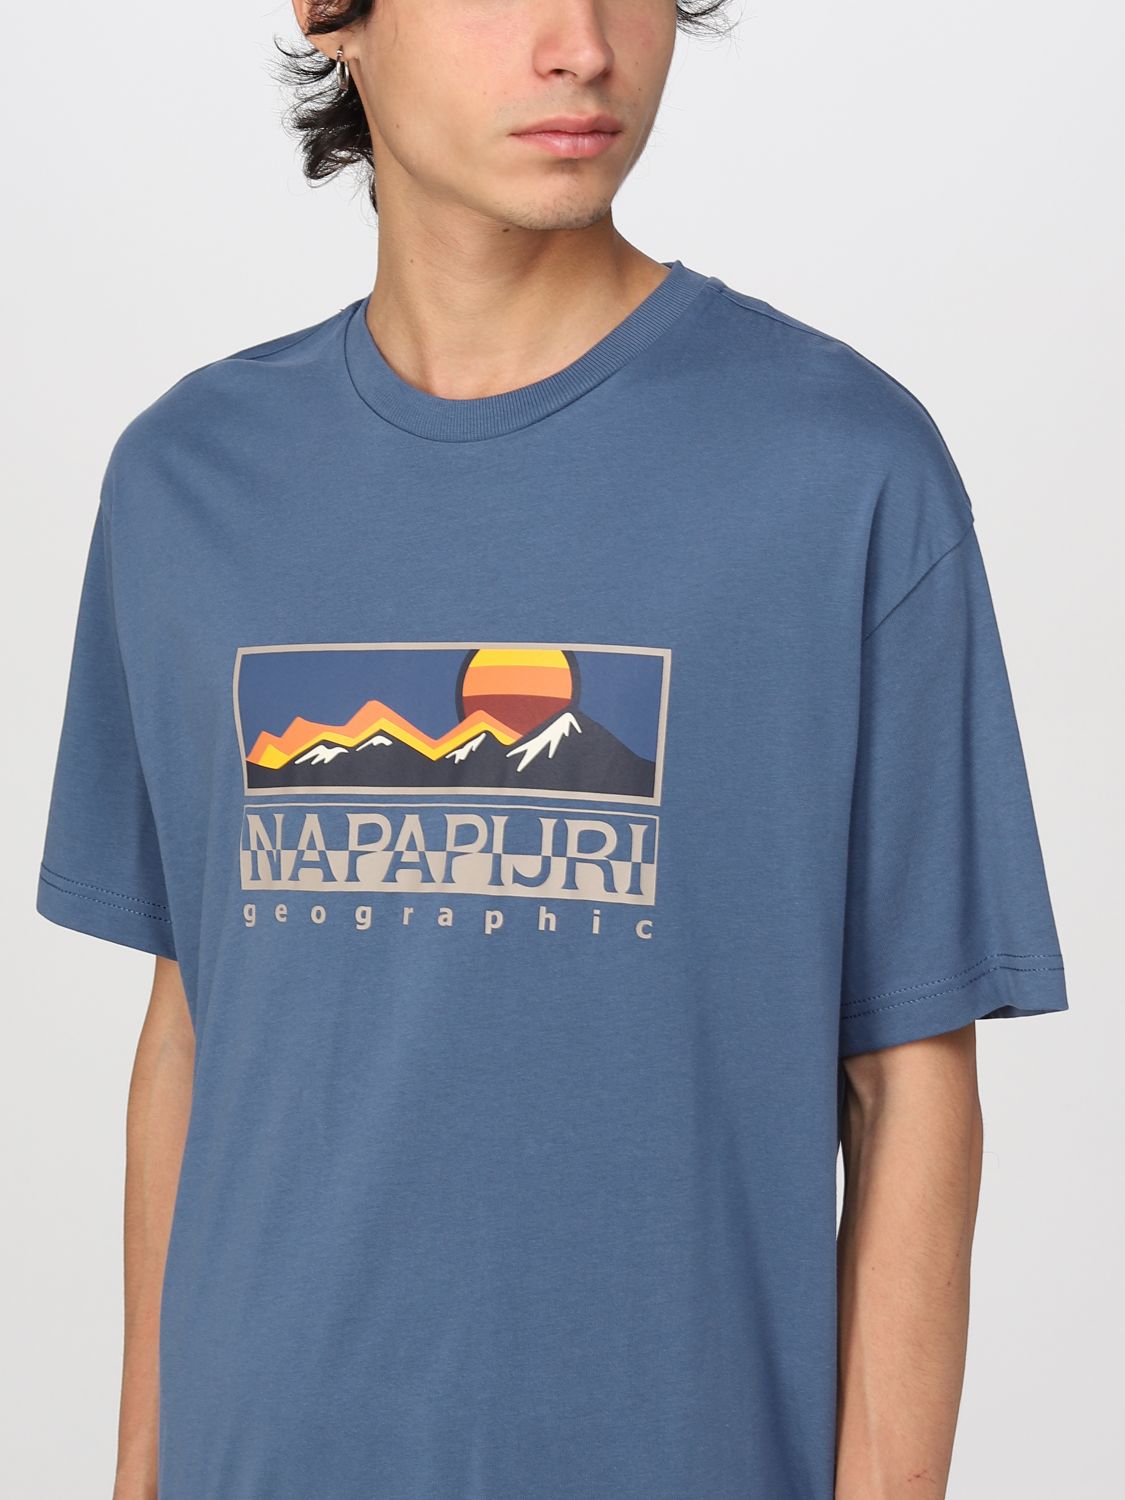 T-shirt Napapijri: T-shirt Napapijri homme bleu 4